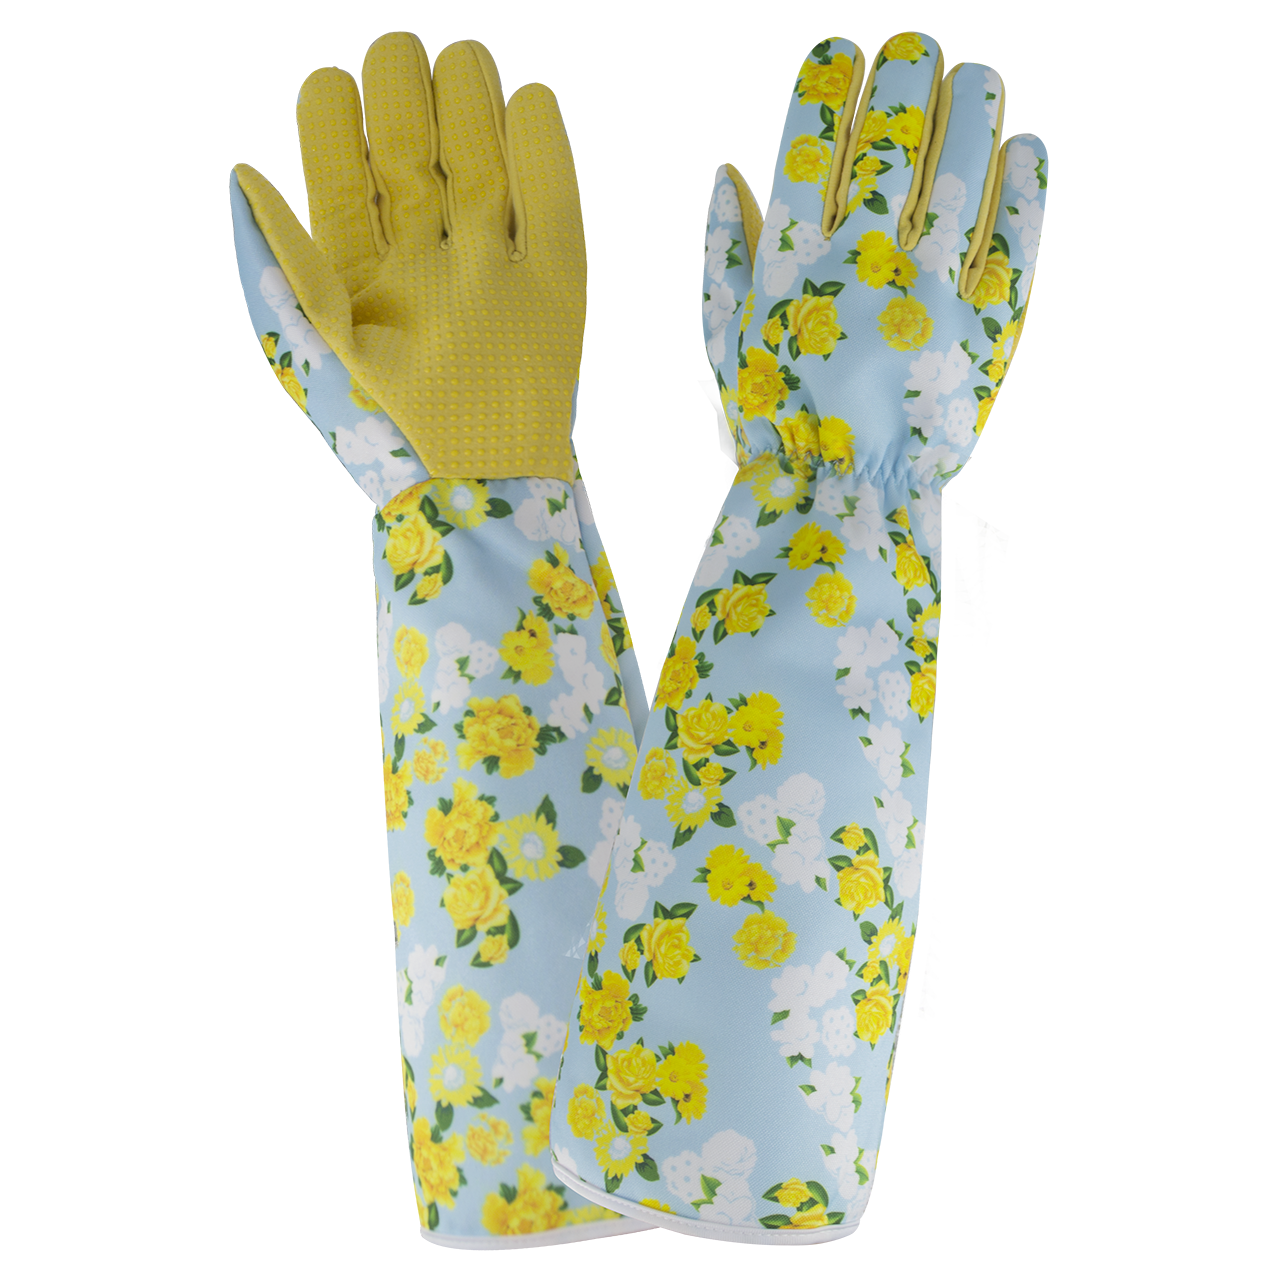 Stab-resistant garden gloves